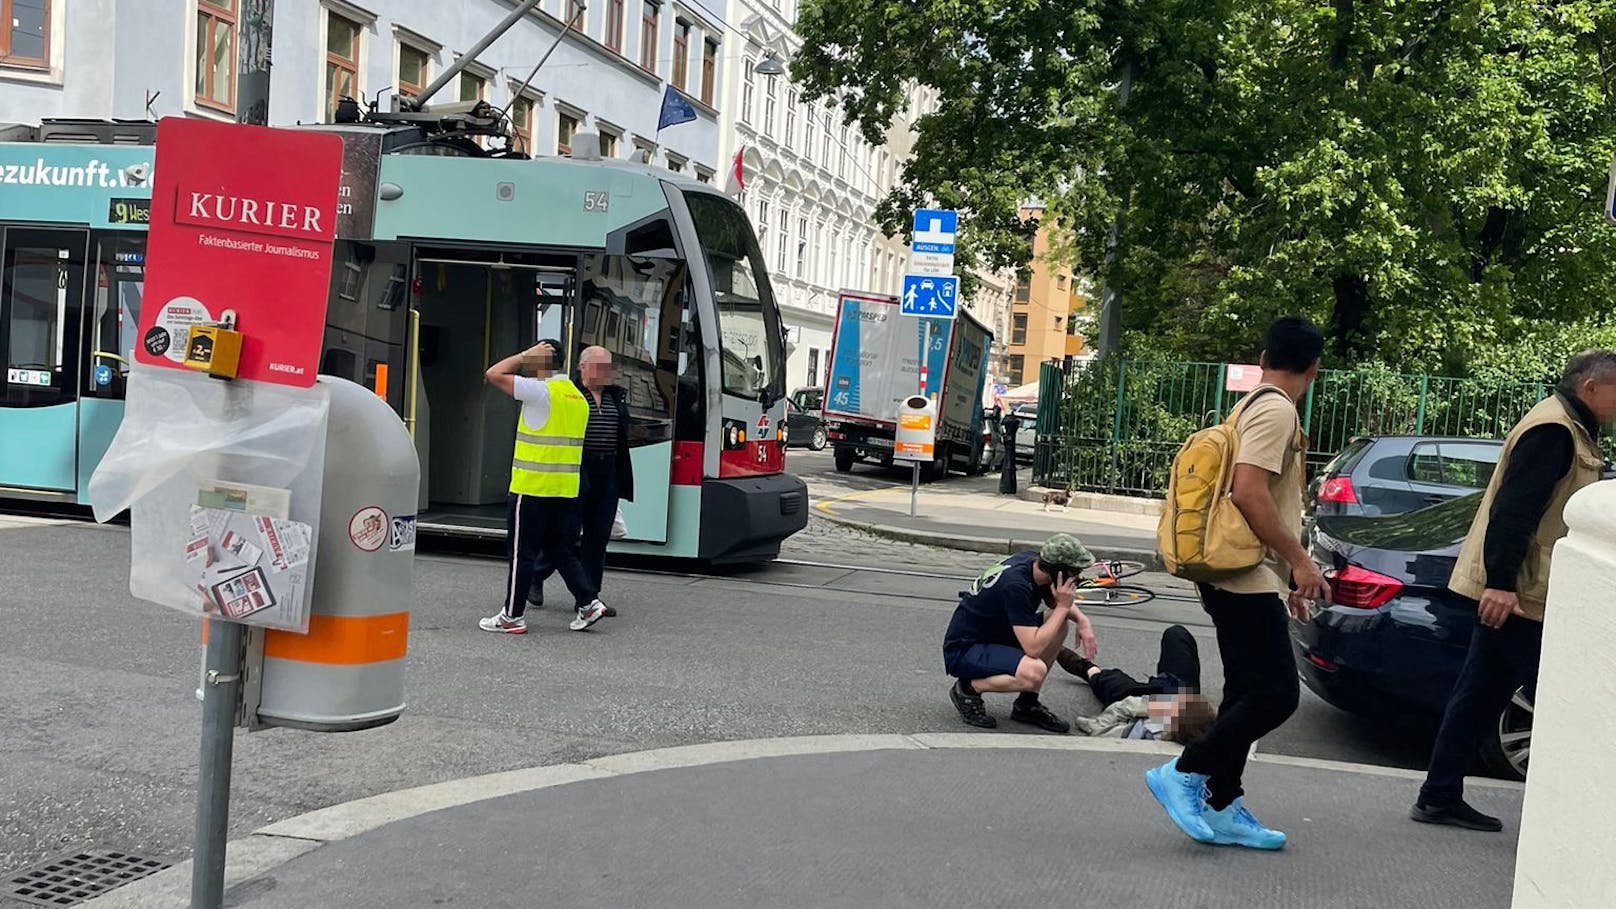 Radfahrer von Bim in Wien erfasst und verletzt